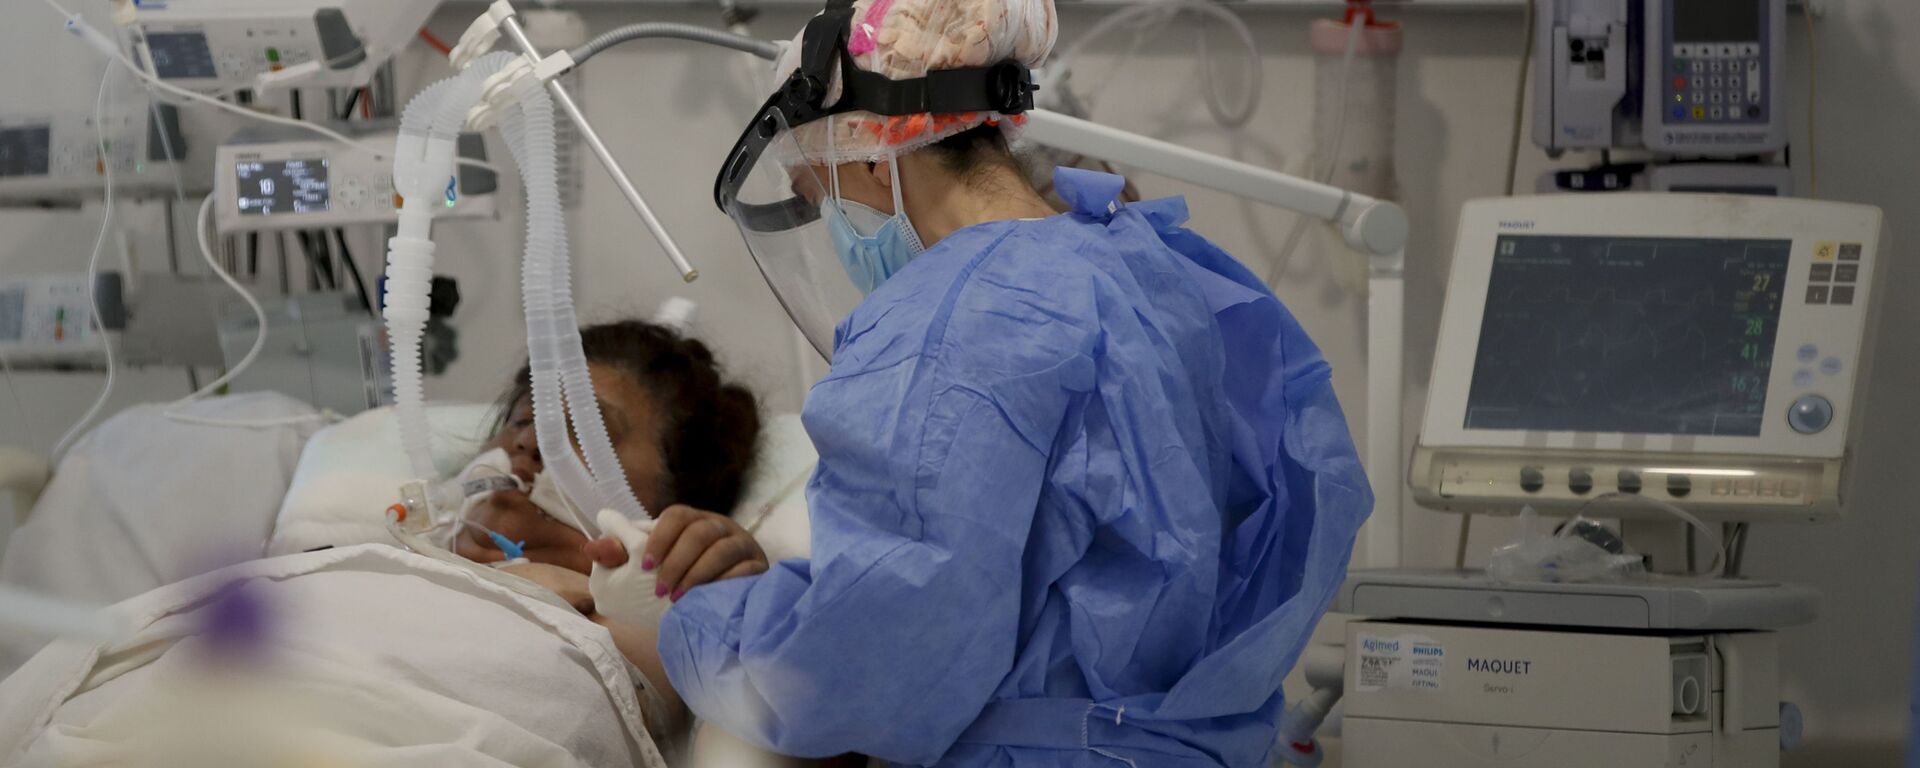 Una trabajadora de la salud atiende a un paciente en una unidad de cuidados intensivos designada para personas infectadas con coronavirus en un hospital en Buenos Aires (Argentina) - Sputnik Mundo, 1920, 22.06.2021